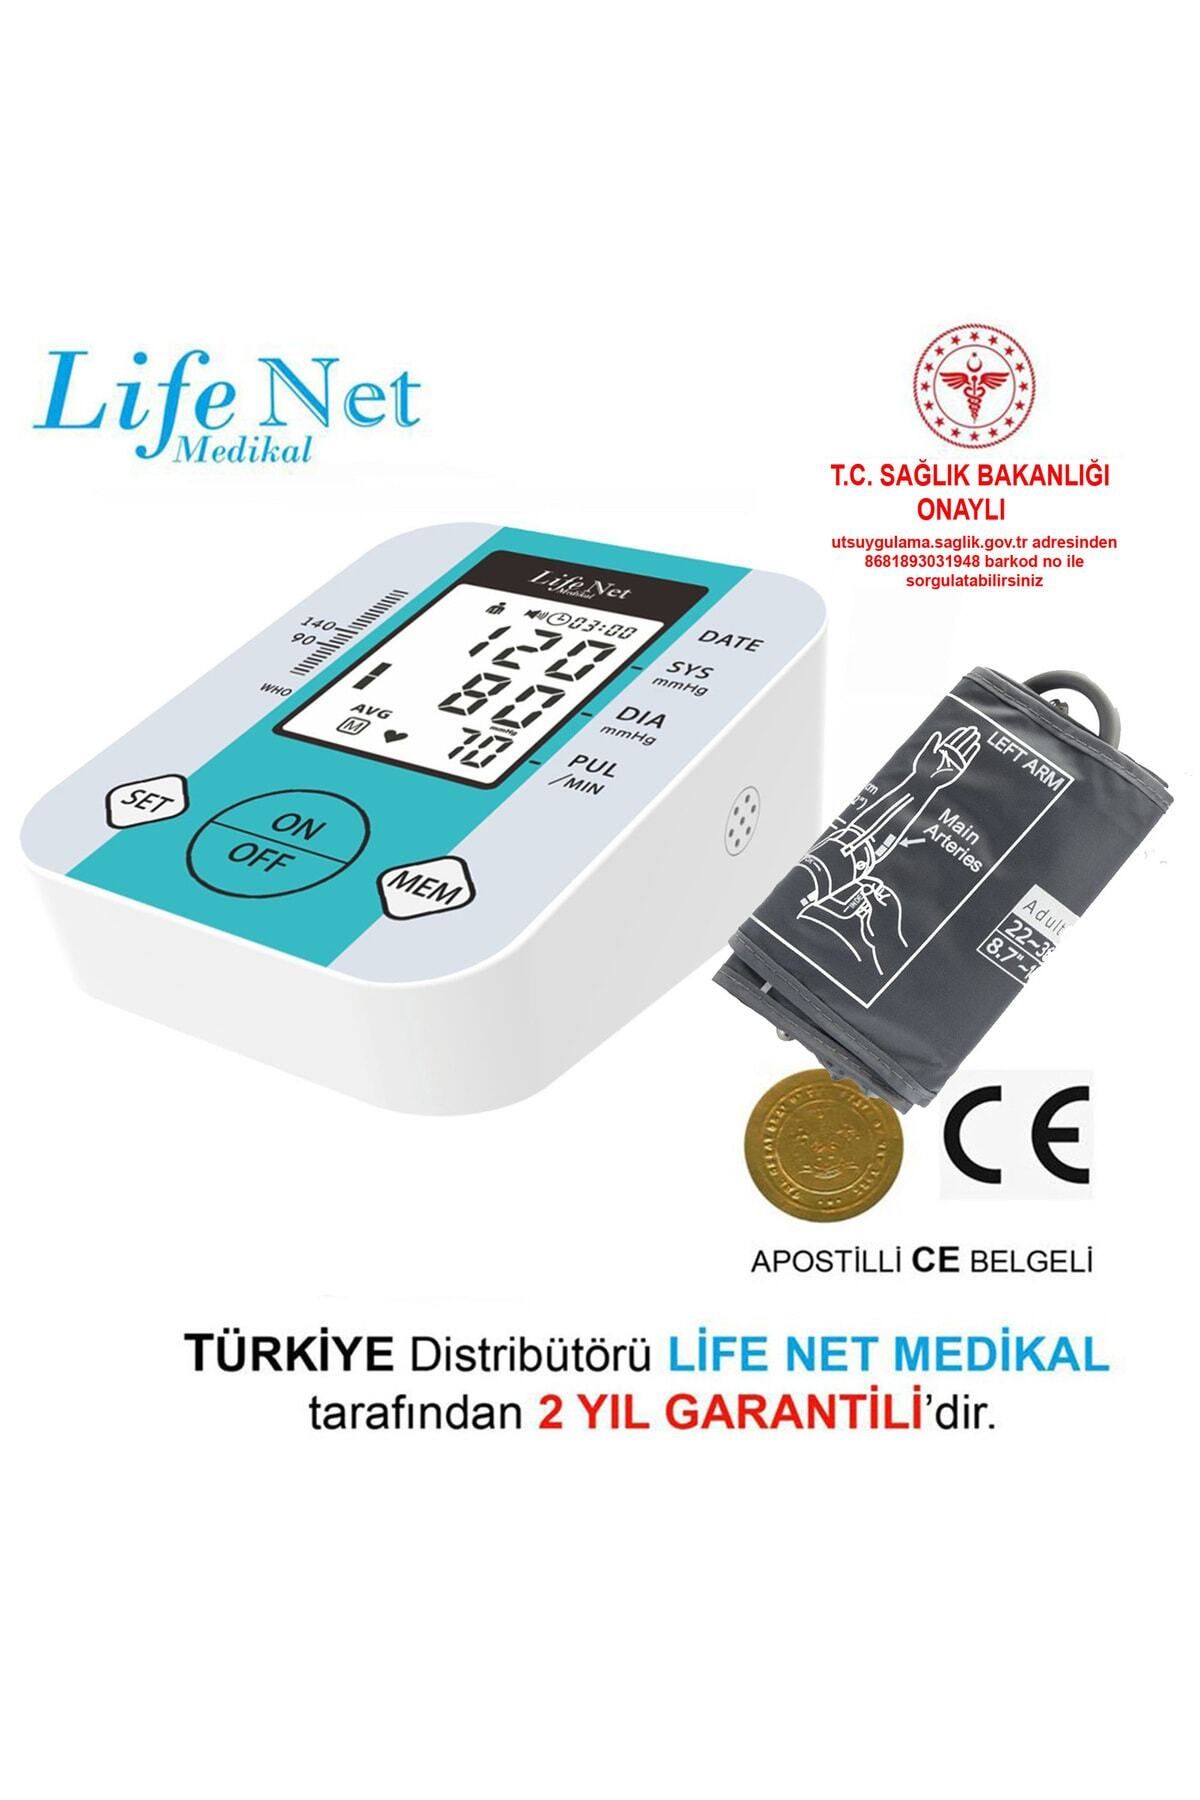 Life Net Medikal Üst Koldan Ölçer Dijital Tansiyon Aleti Nabız Ölçer USB Girişli JN-163D